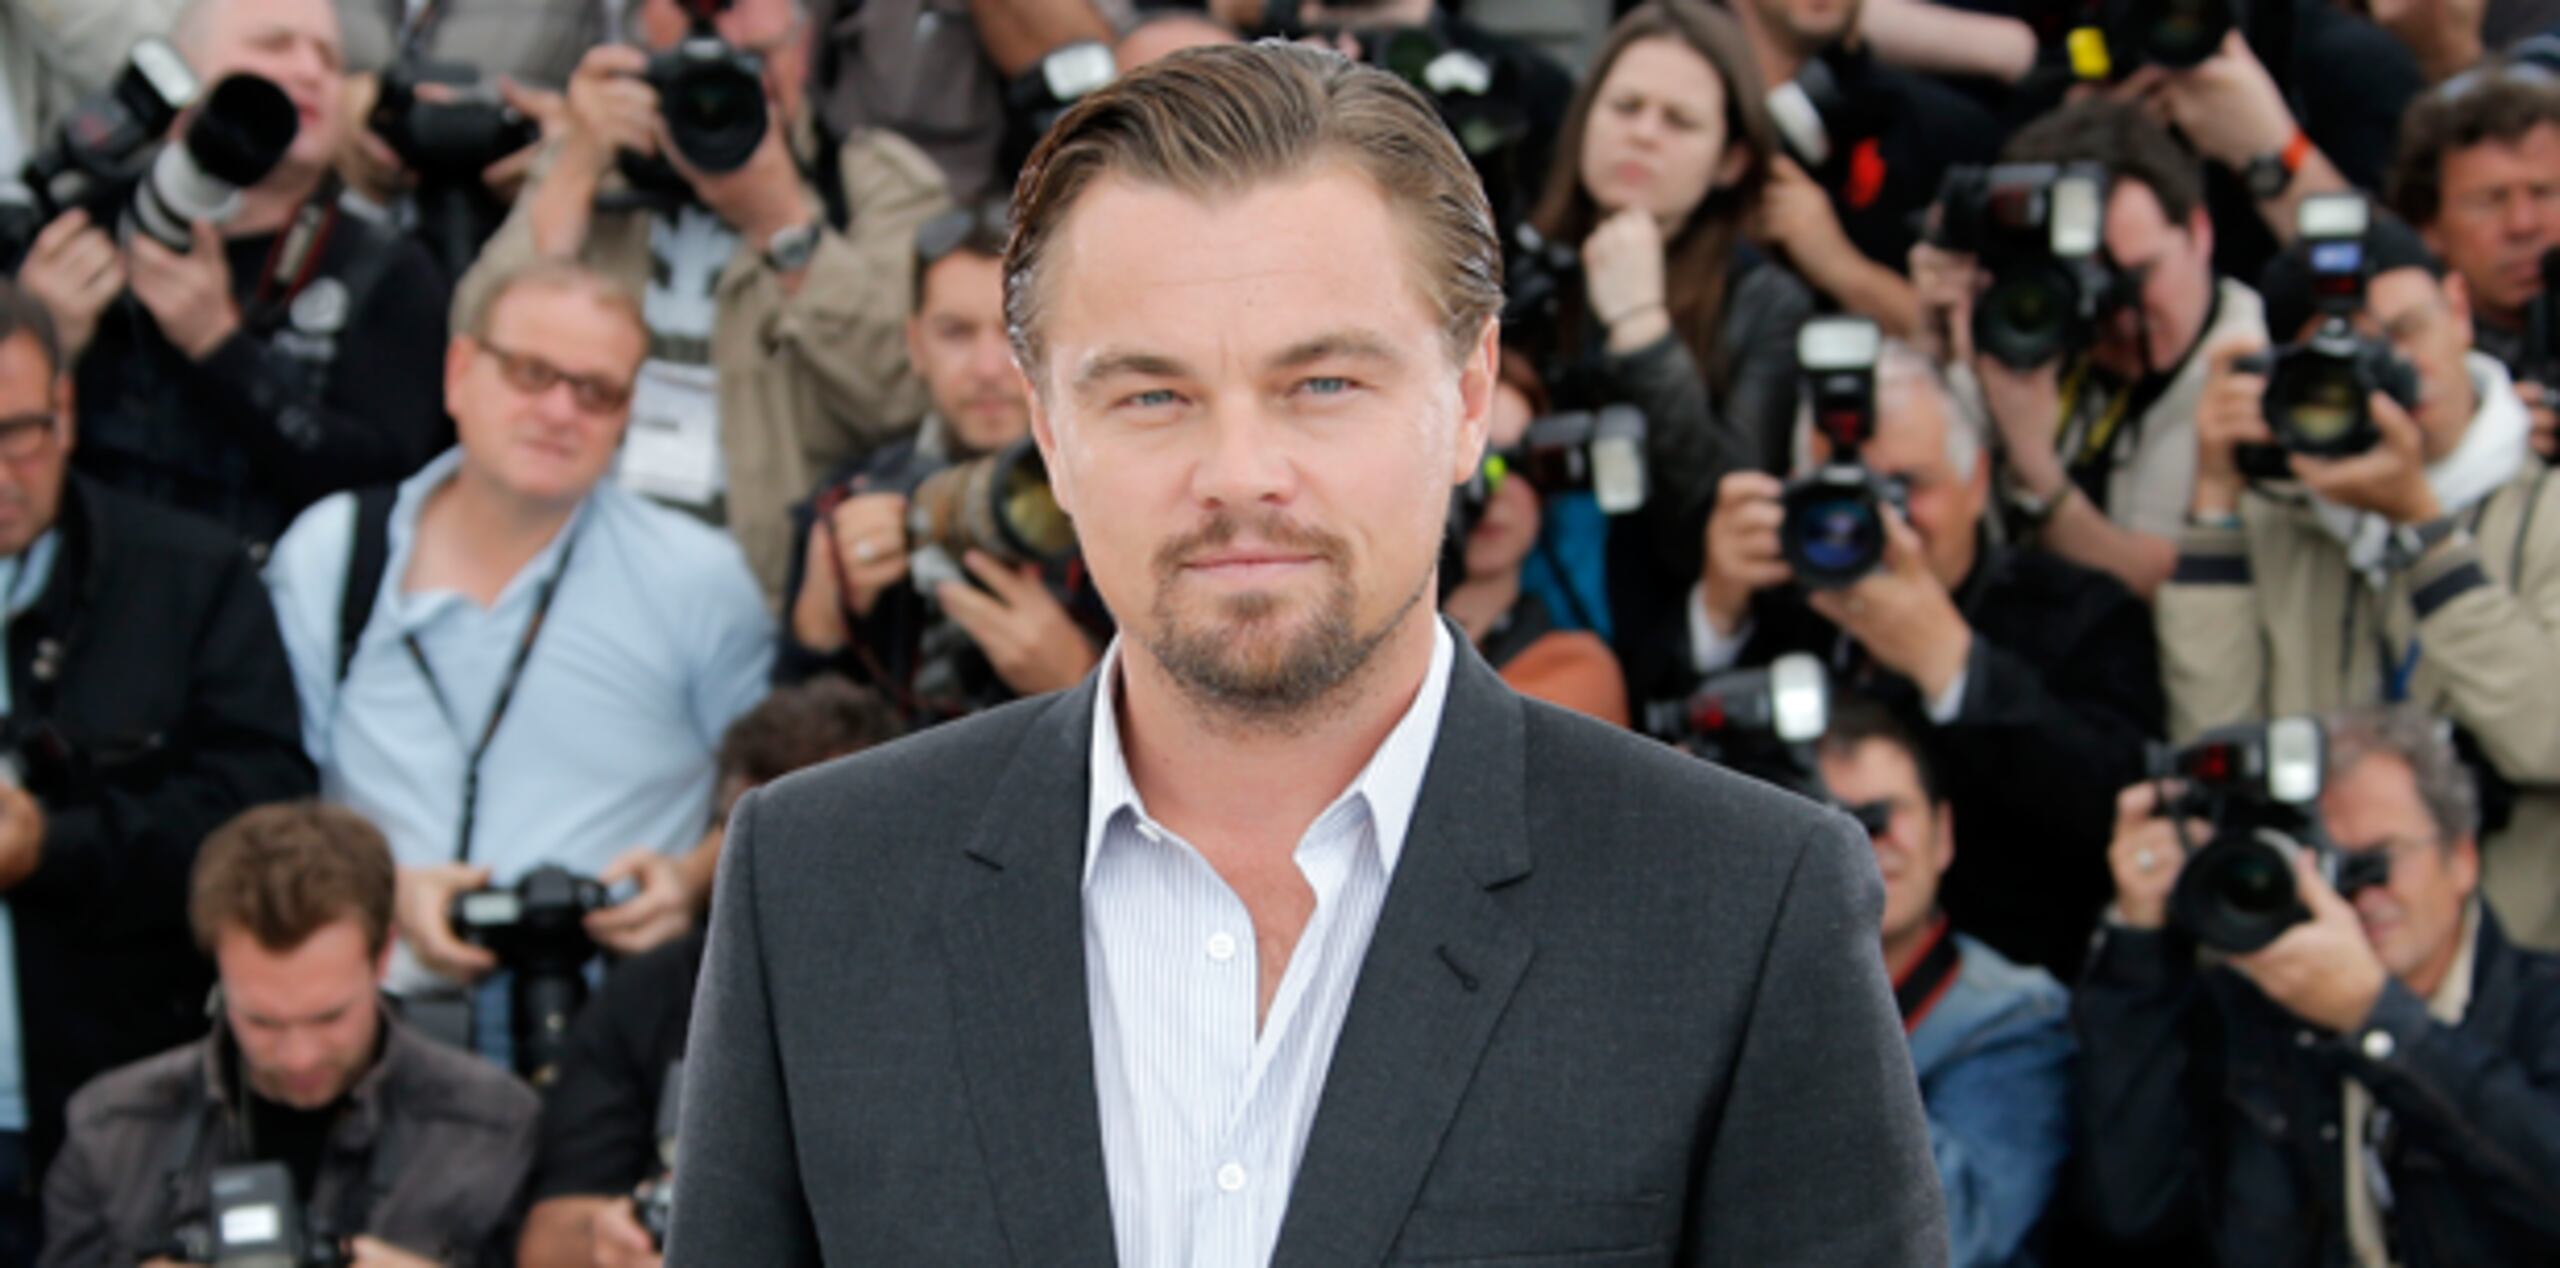 DiCaprio superó a varios postores en la puja por el bolso, aunque perdió en otros dos objetos. (AP)